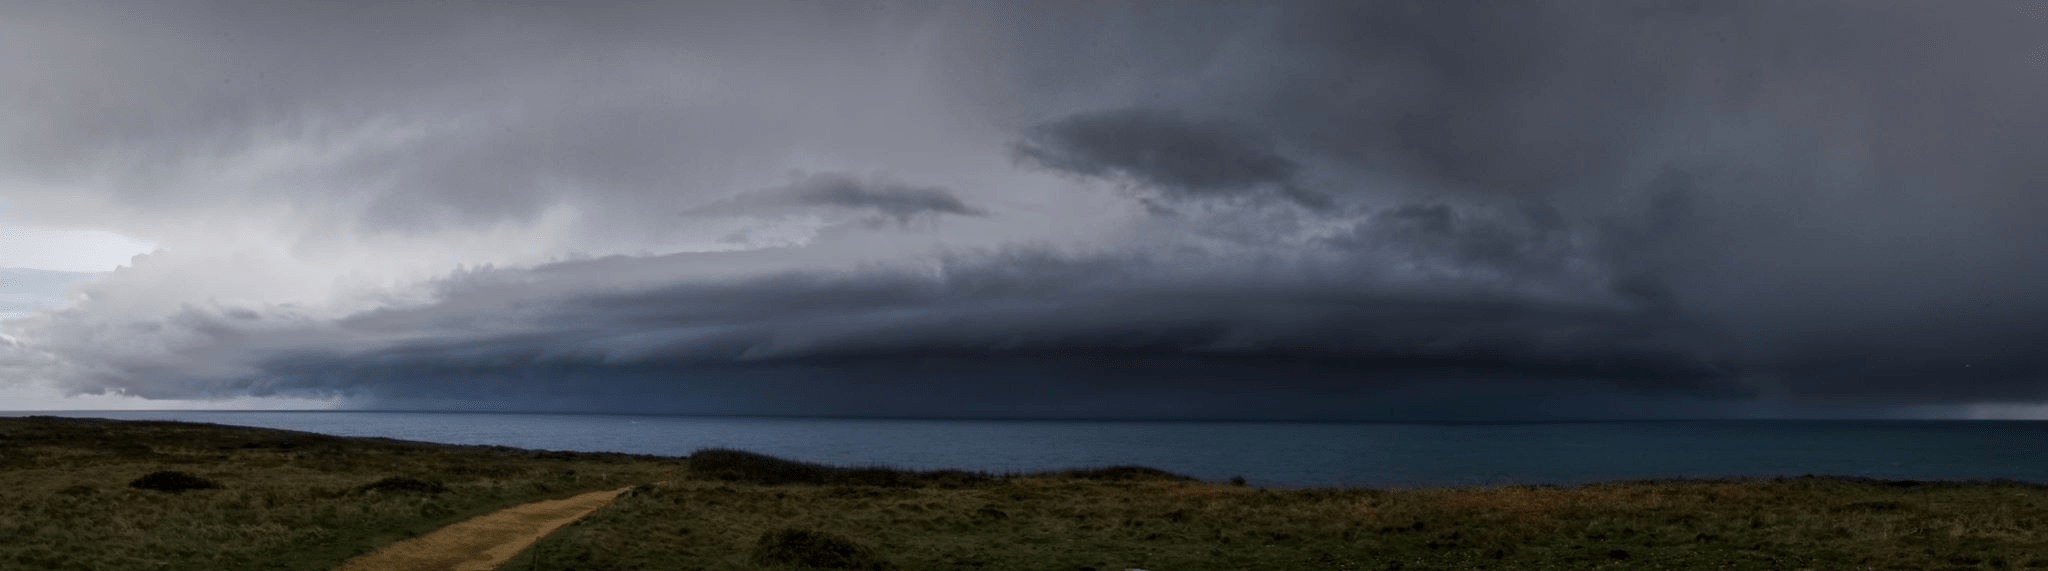 Front orageux qui a sévi vers midi à la Pointe du Raz dans le Finistère. - 22/03/2017 12:00 - Christophe RUSSO